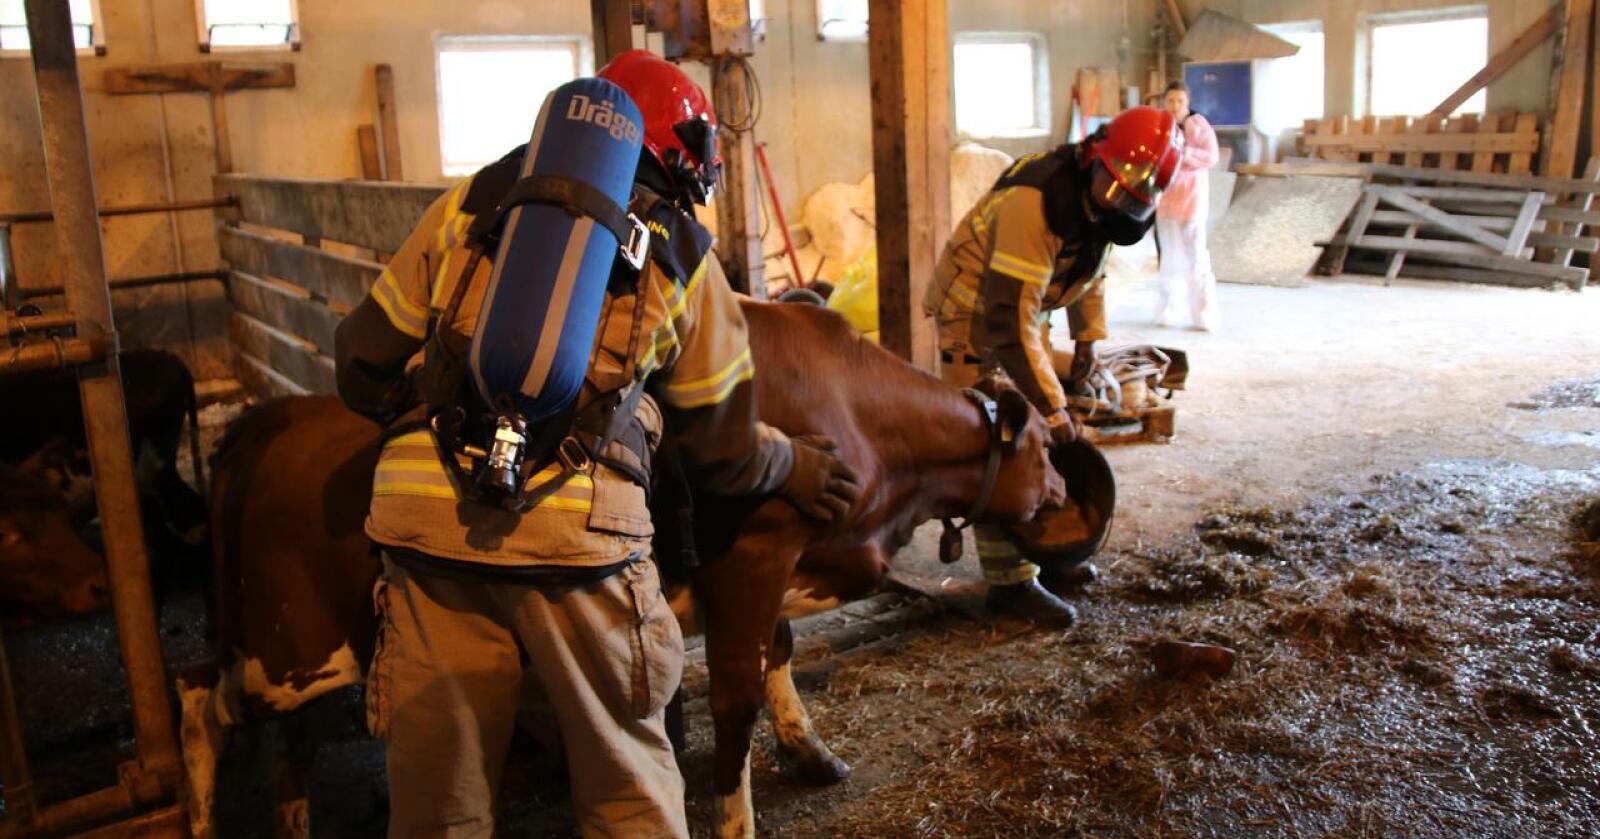 Midt-Hedmark Brann og redning skal systematisere redningsarbeid på husdyr. Bildet er fra en brannøvelse i Valdres. Illustrasjonsfoto: Karl Erik Berge. 